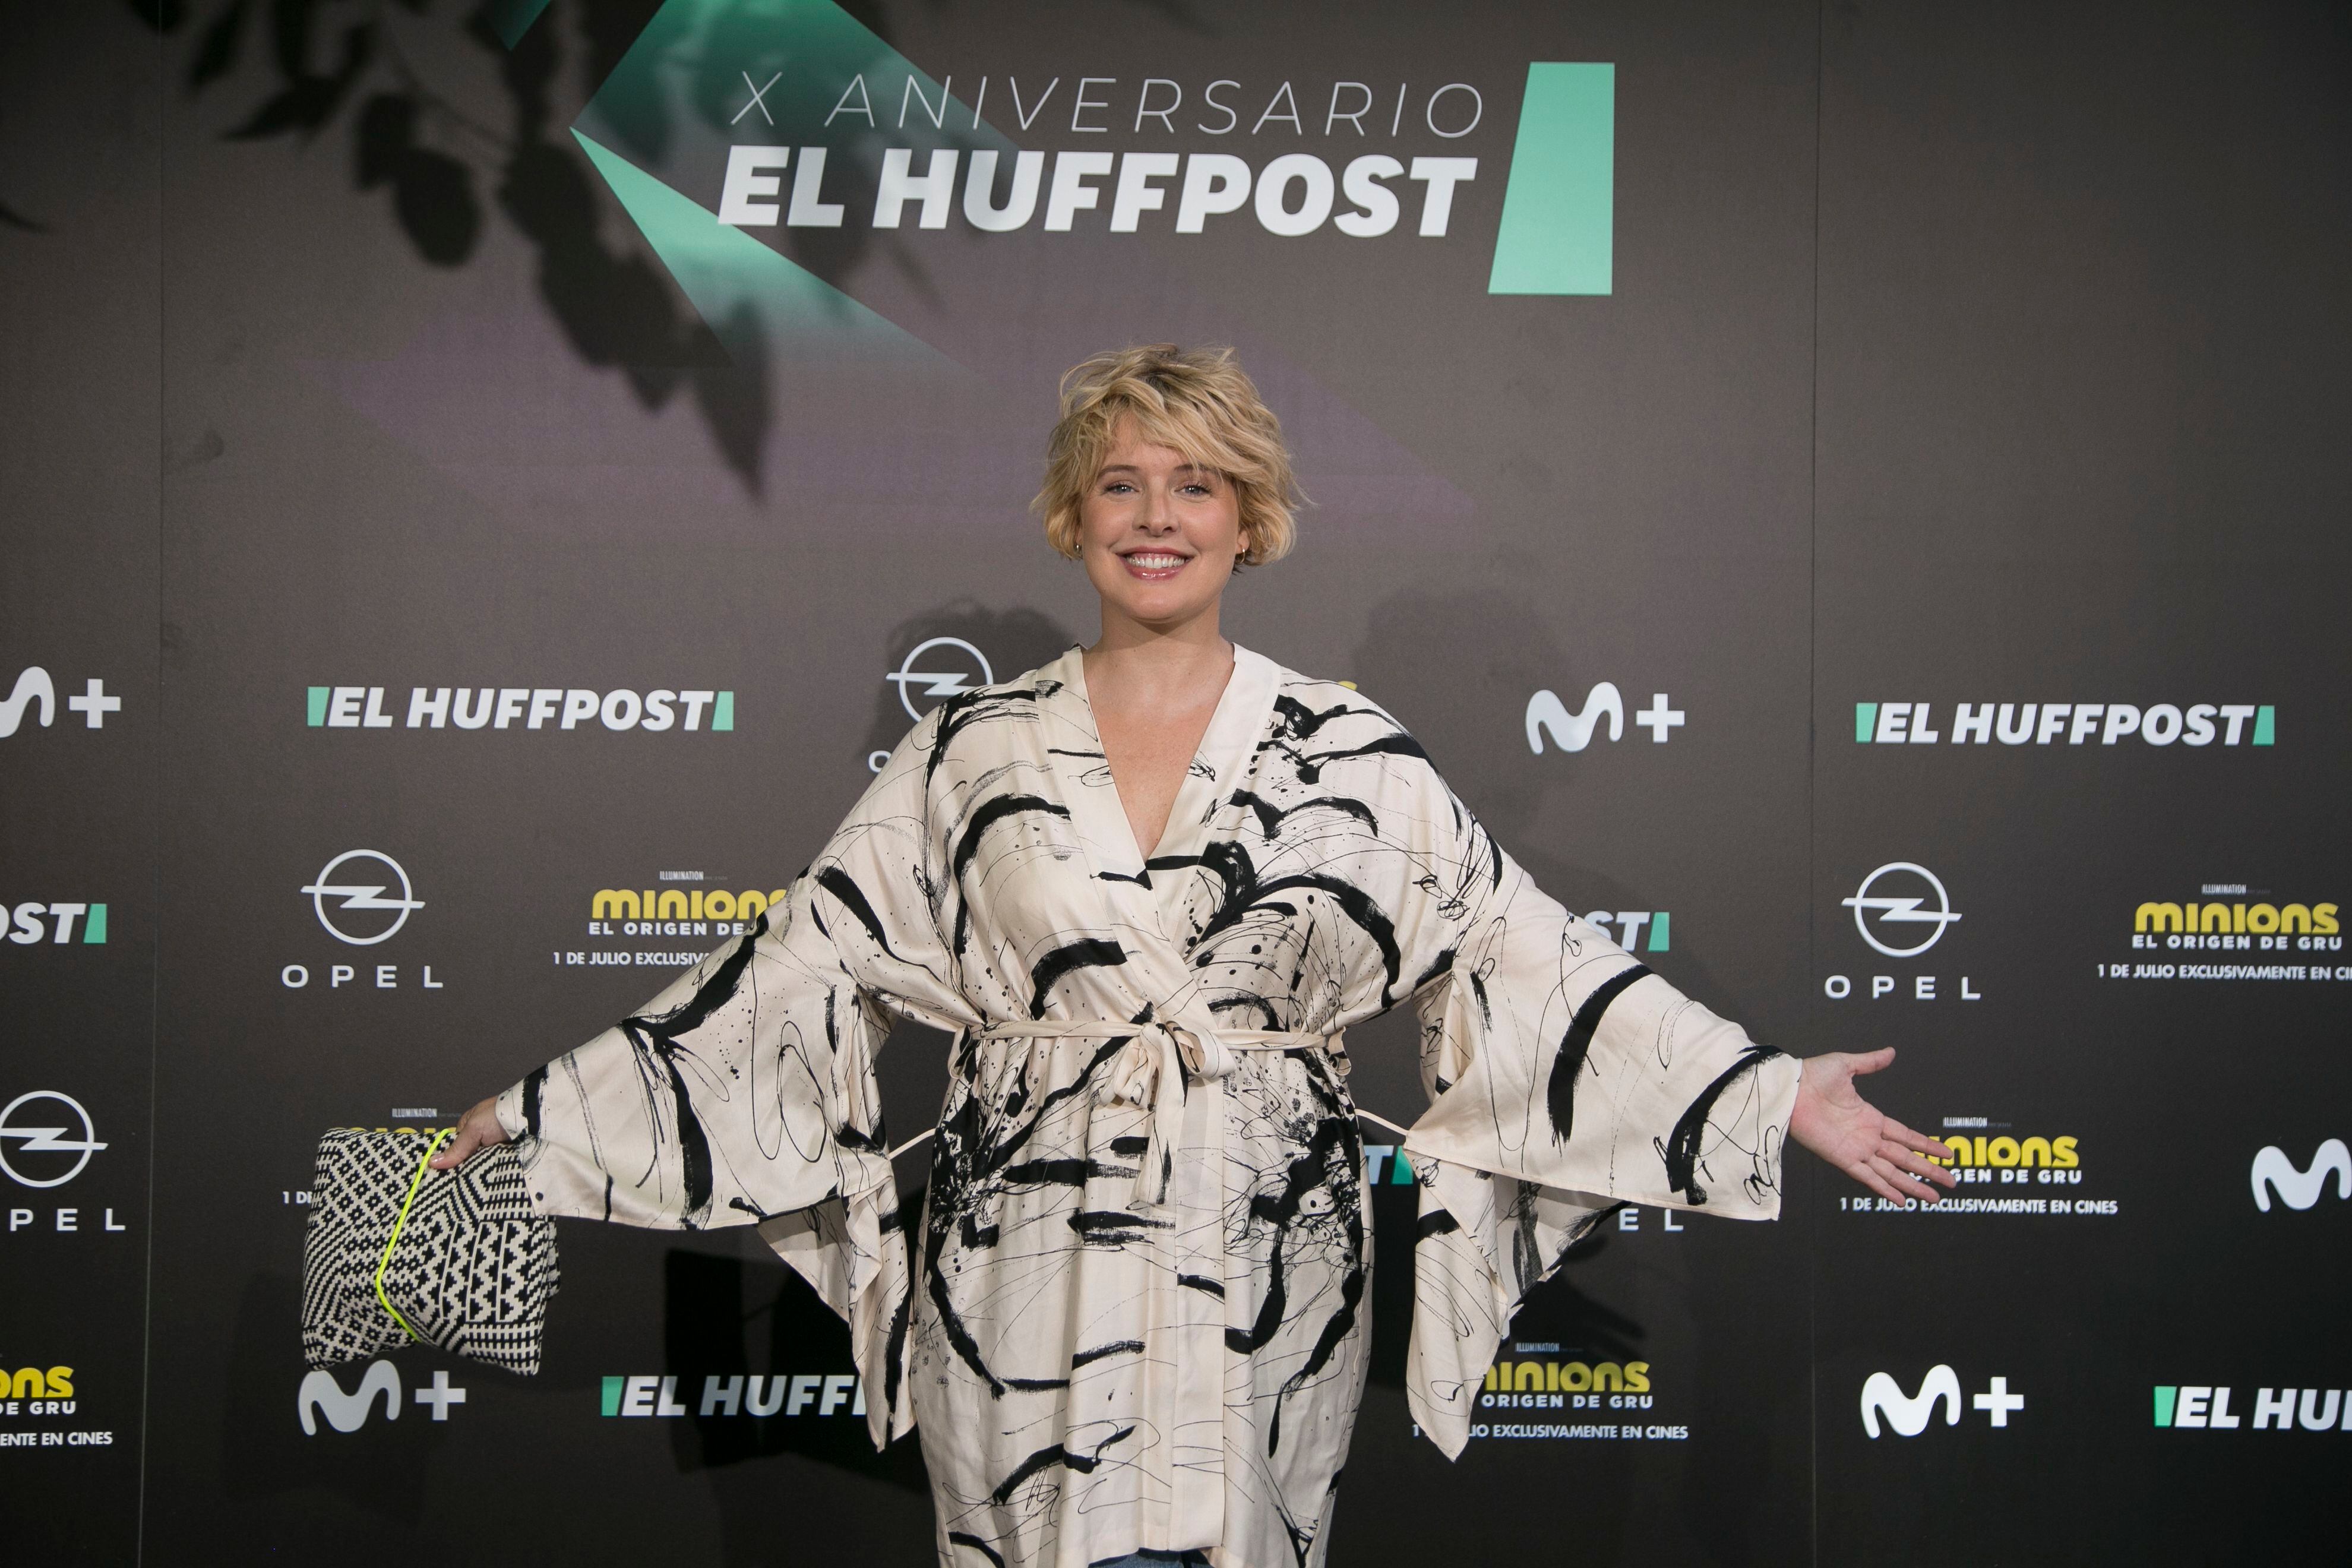 La periodista Tania Llasera posa en la fiesta del X aniversario de El Huffpost. 